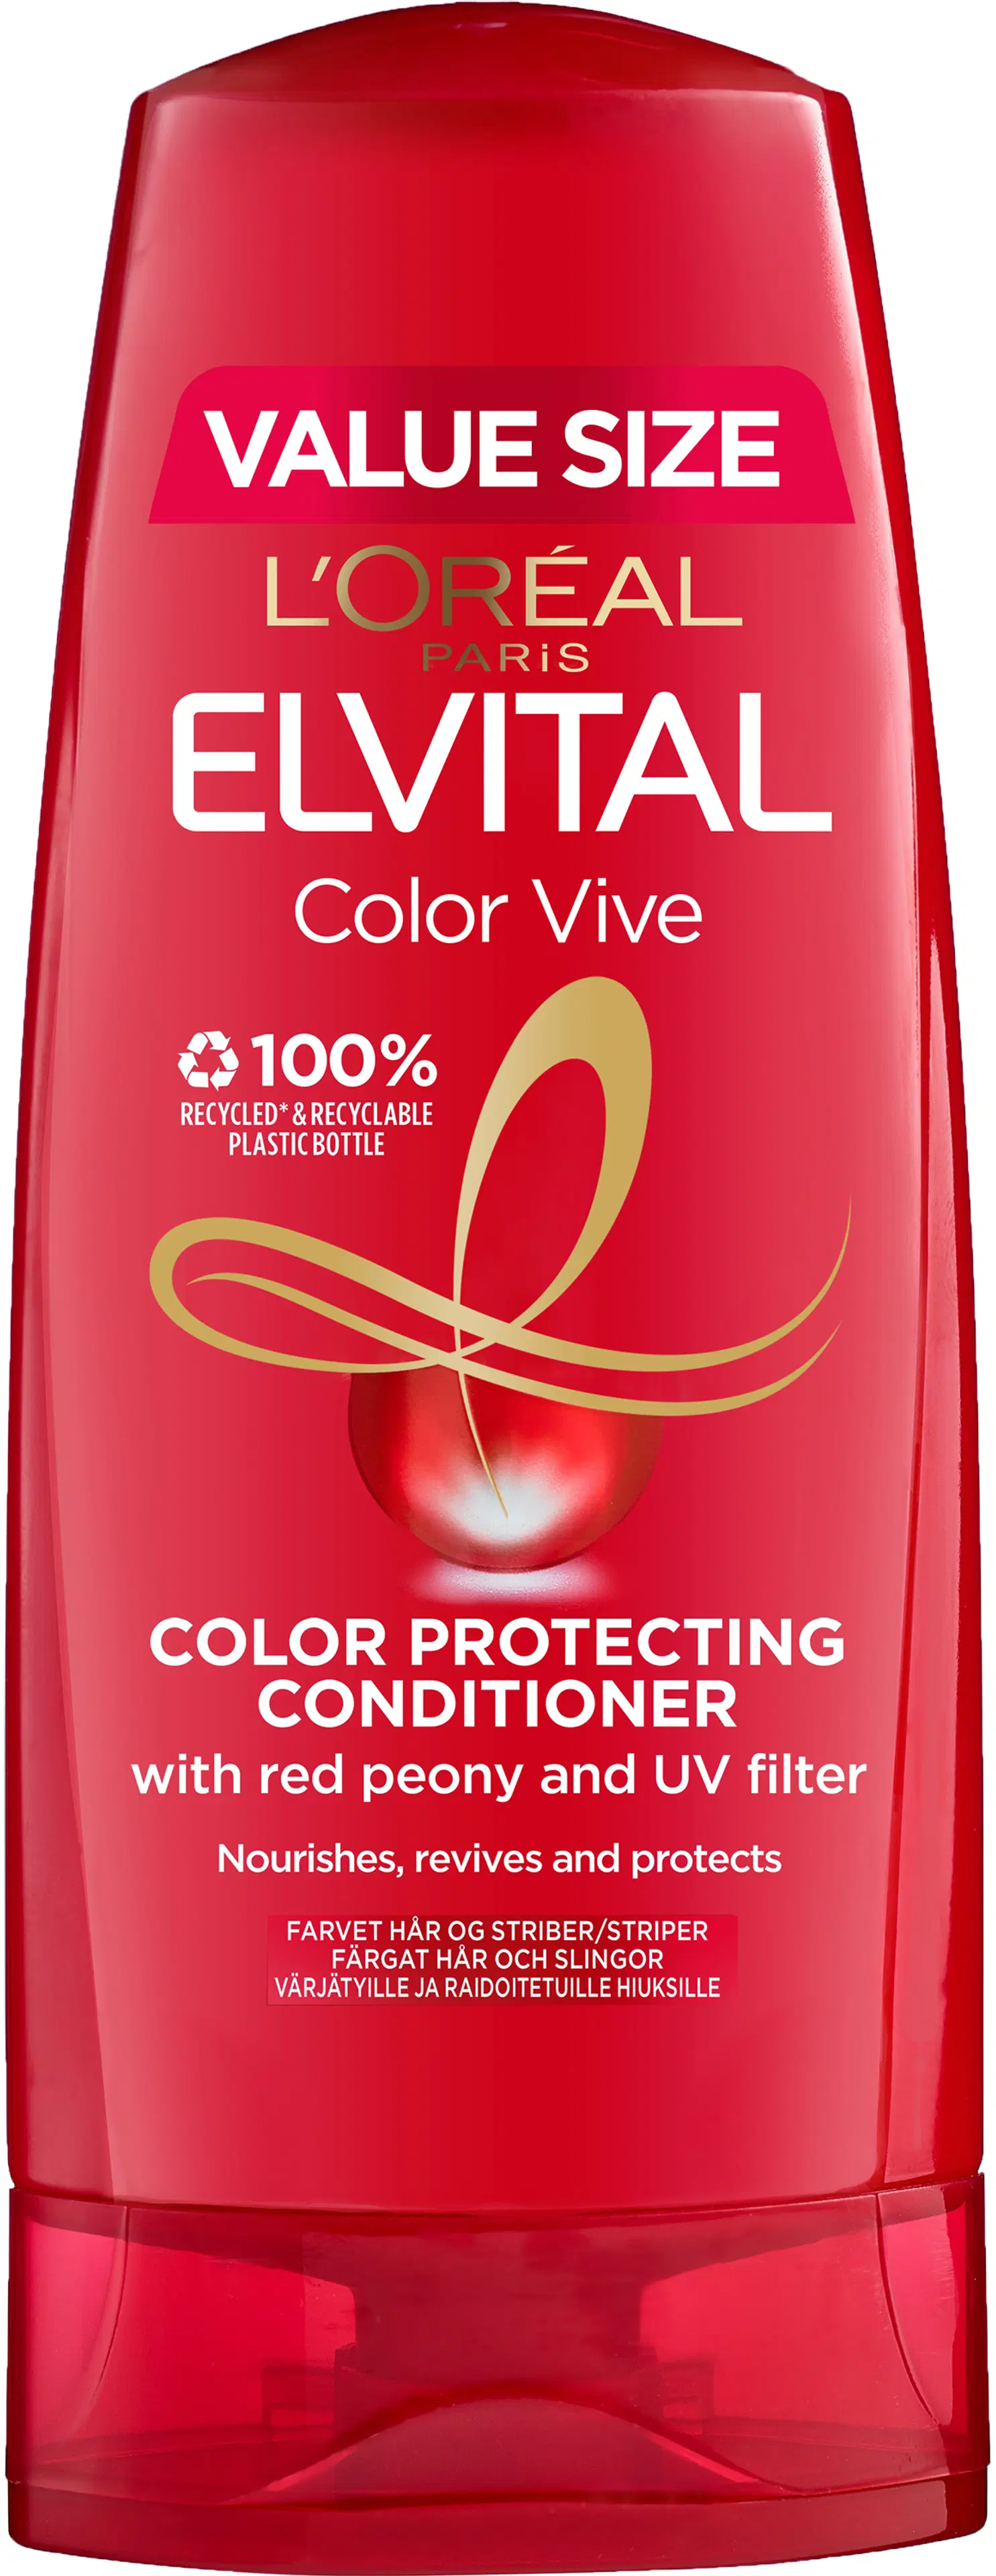 L'Oréal Paris Elvital Color-Vive Hoitoaine värjätyille ja raidoitetuille hiuksille 300ml